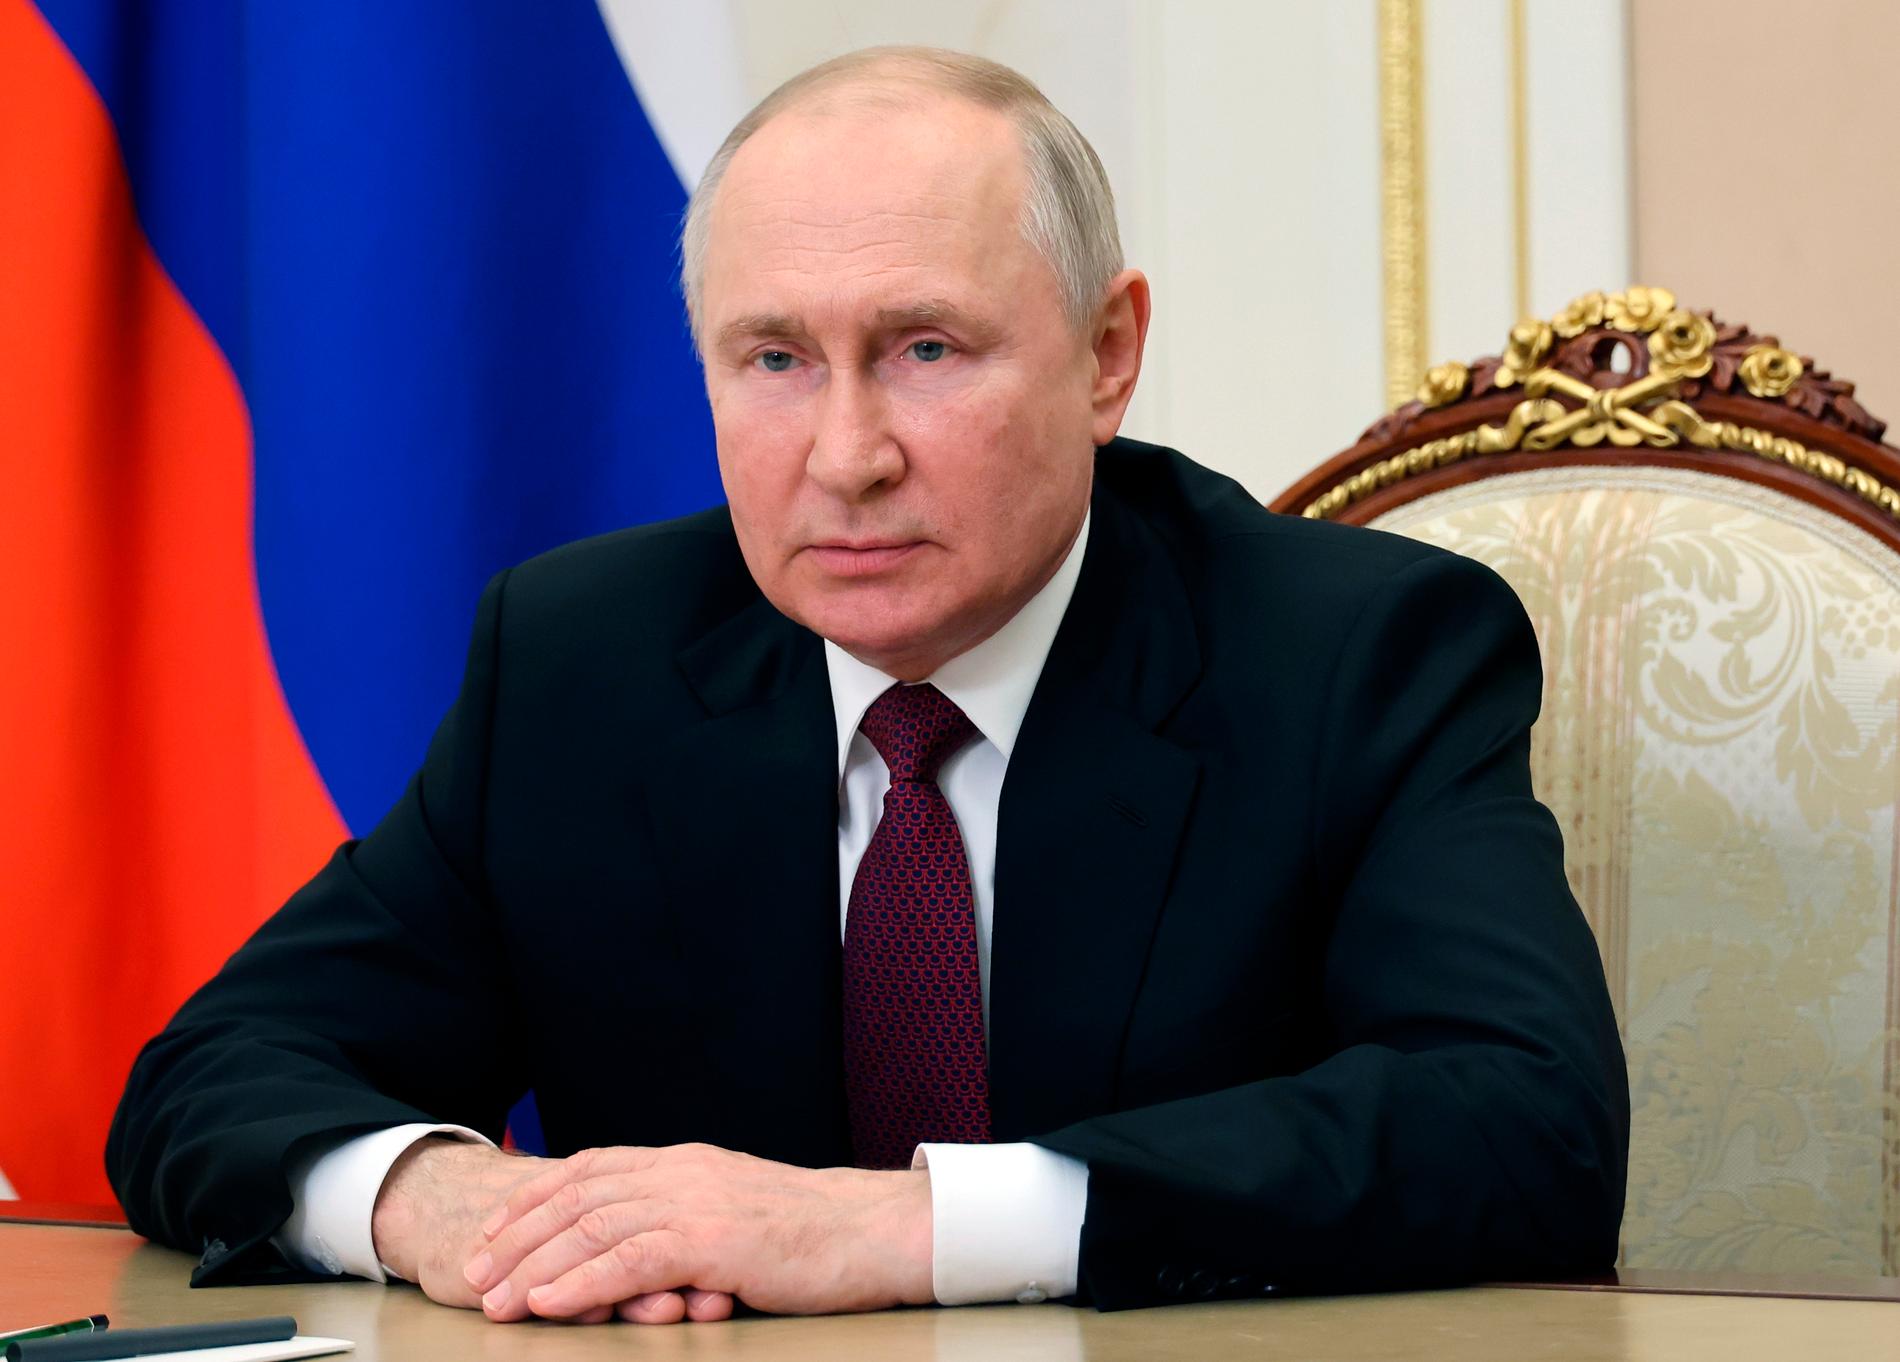 Ryske ledaren Vladimir Putin.